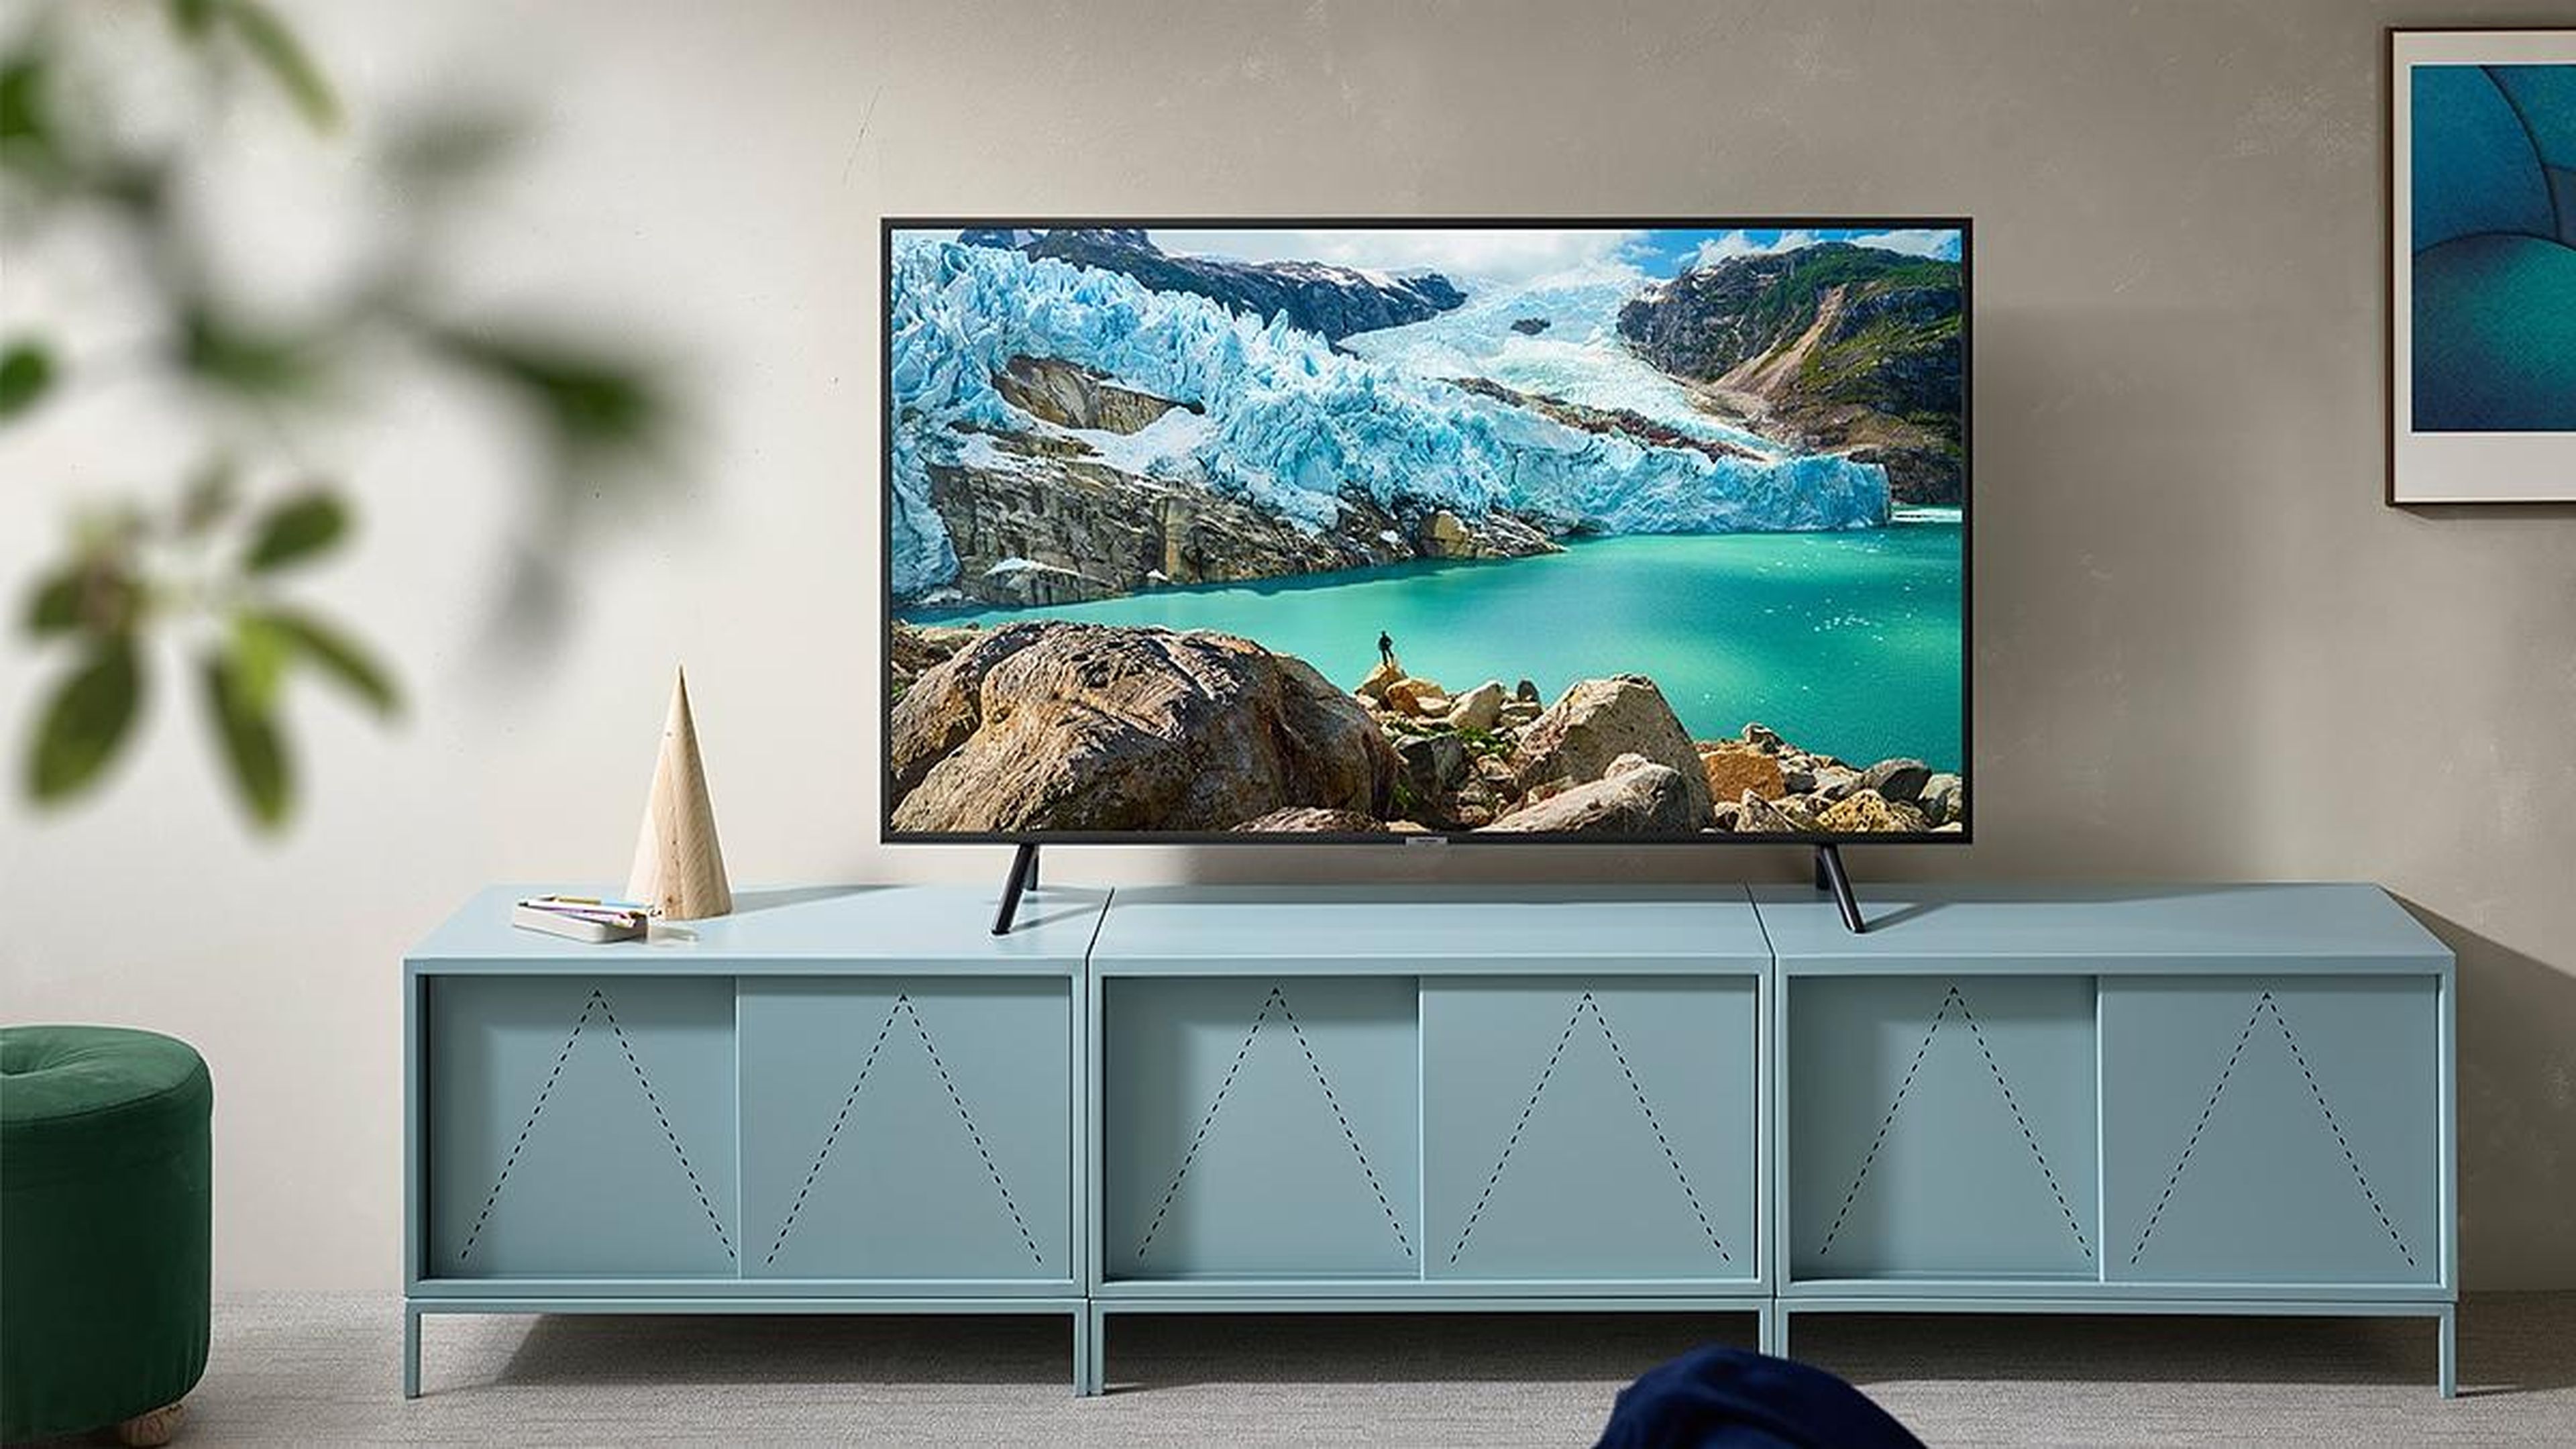 Las ofertas de junio de  dejan esta Smart TV de Samsung de 43 pulgadas  a solo 274€